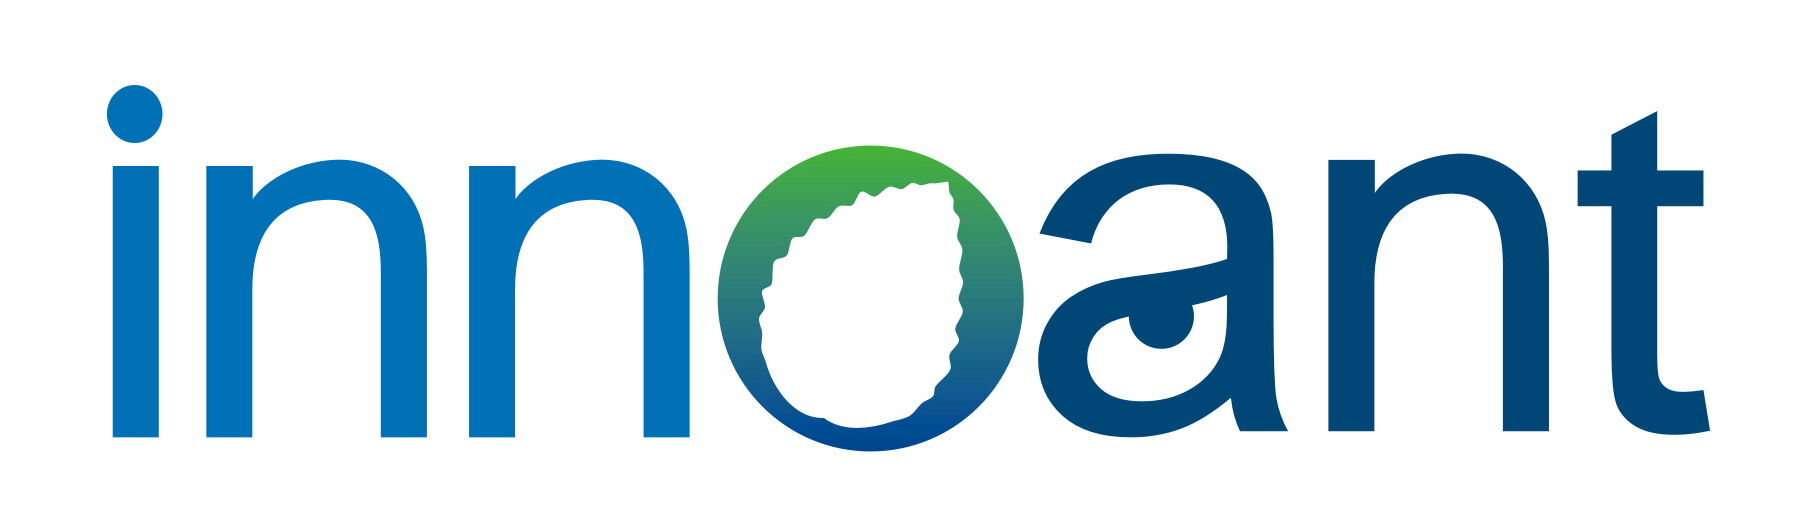 江门创源环保有限公司logo